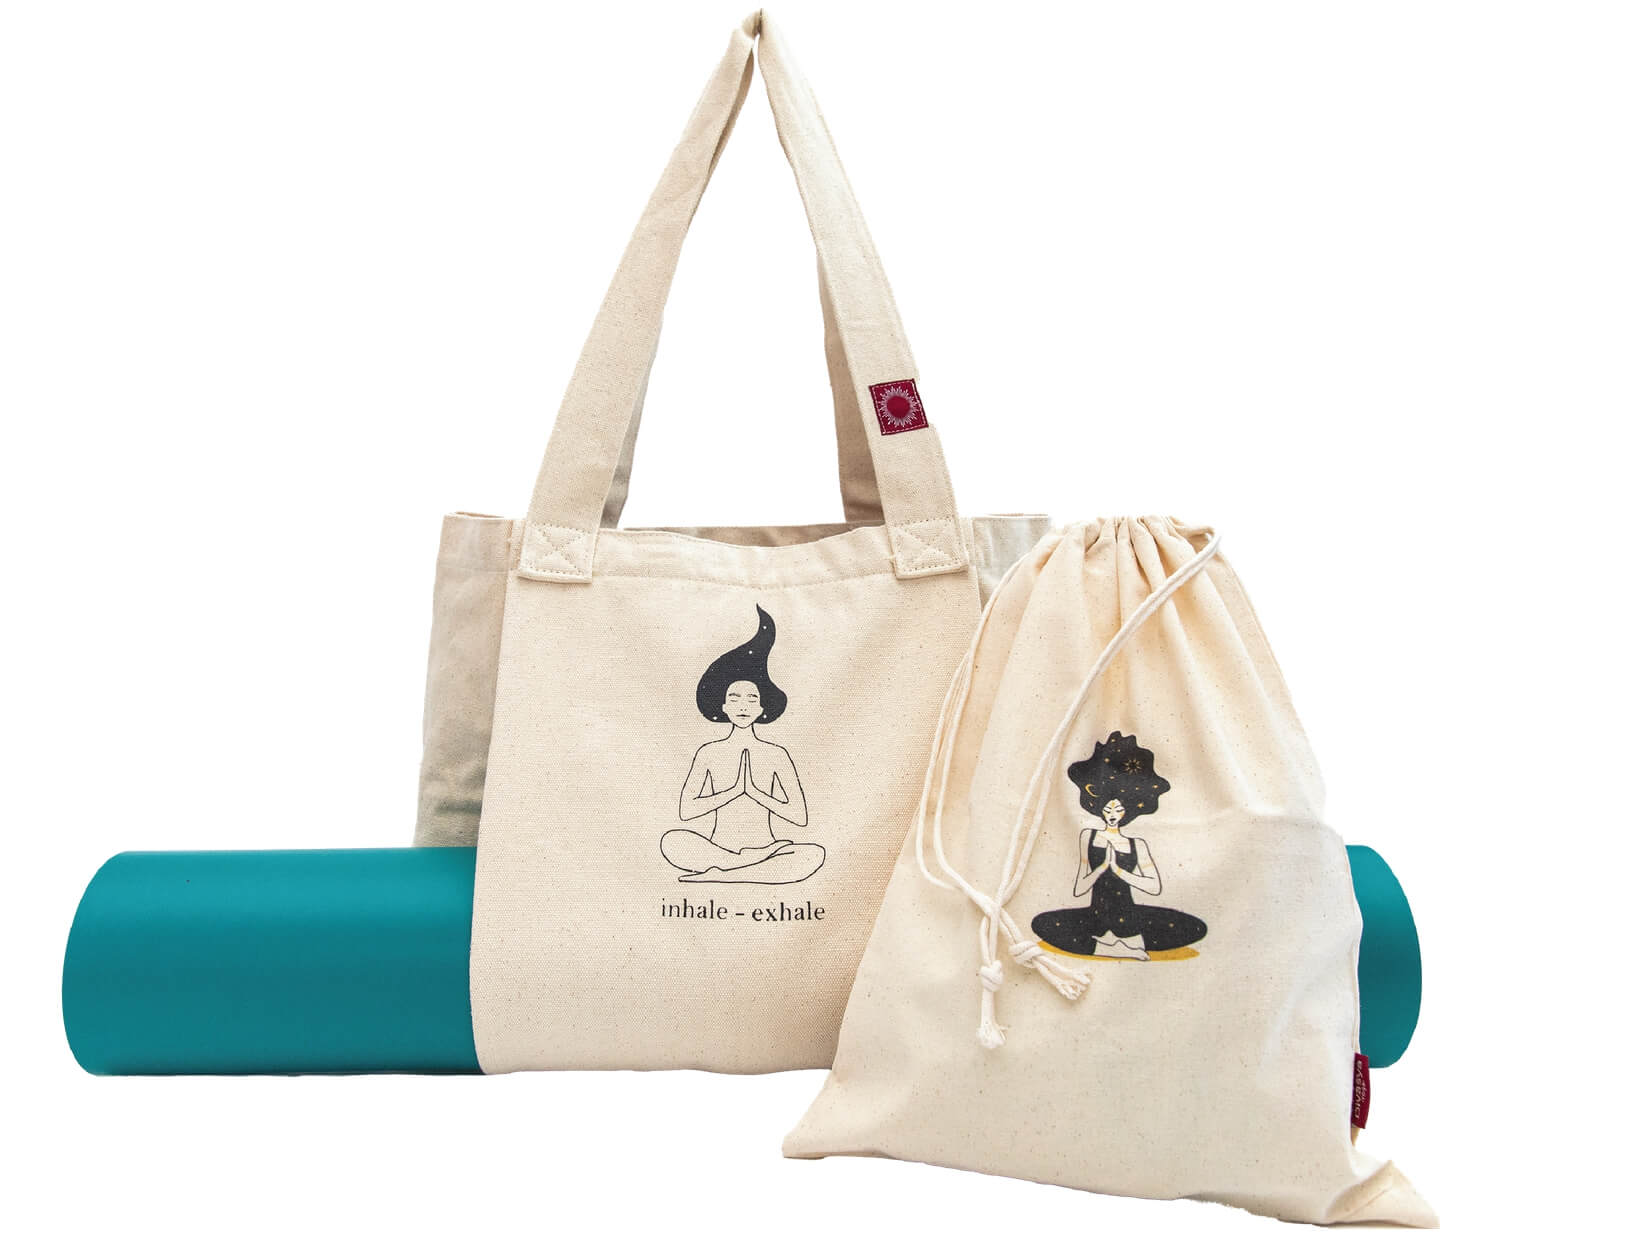 แฟชั่นและความงาม :: เครื่องประดับ :: ถุง :: Handmade Yoga Mat Bag Sports  Bags Woven Cotton Yoga Bag Tote Yoga Sling bag Pilates Bag Pilates Mat Bag  Canvas Bag Women yoga bag (YB242)